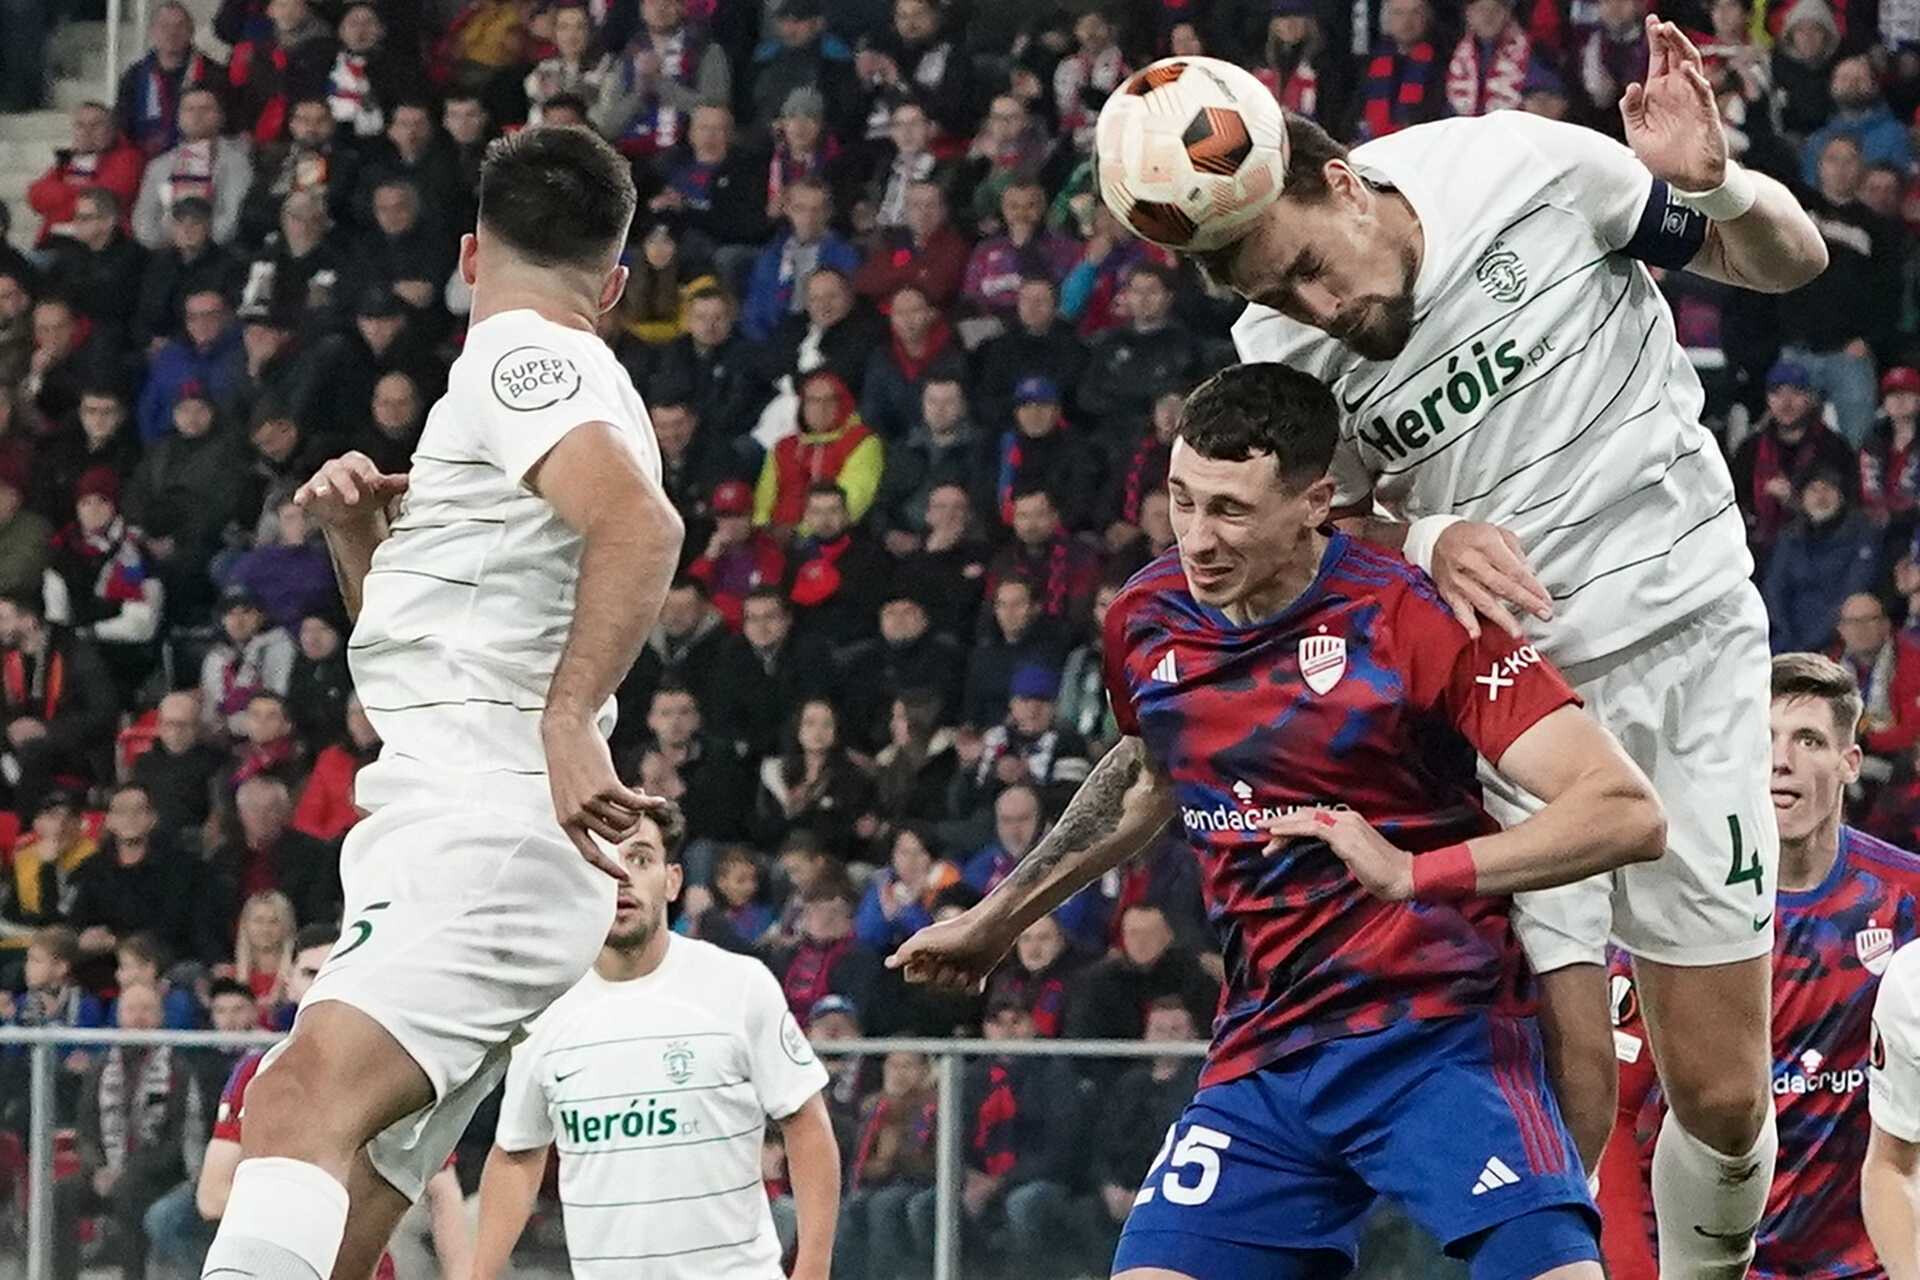 Pela Liga Europa, Sporting busca recuperação em jogo na Polônia